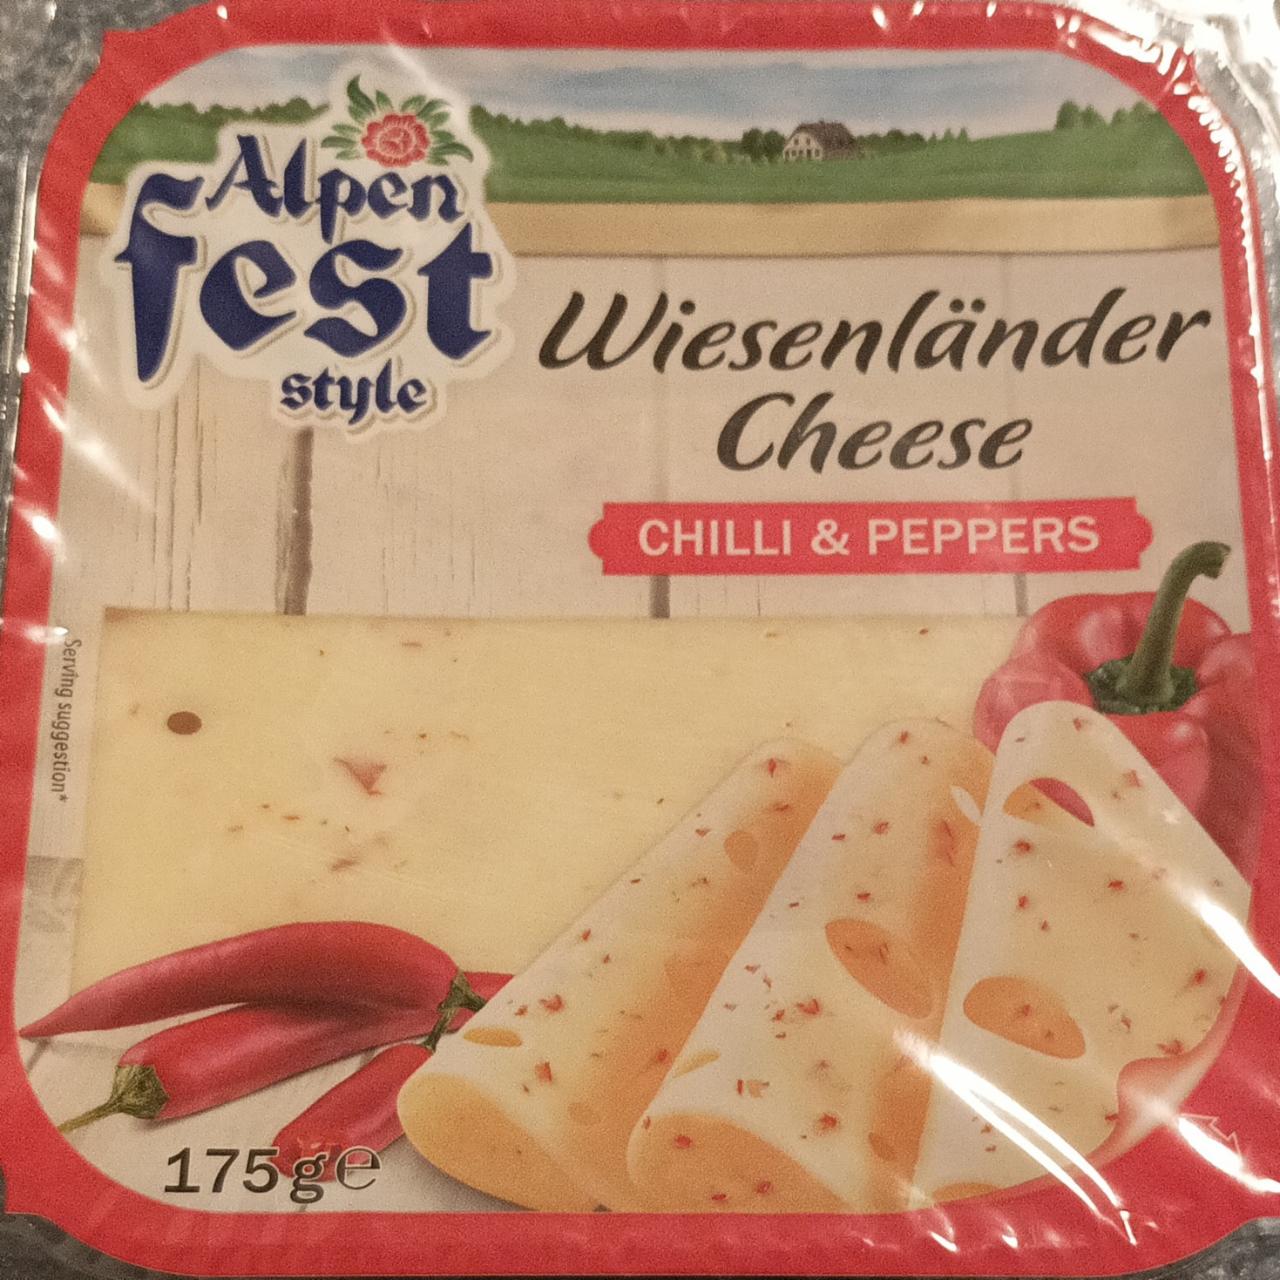 Képek - Wiesenländer Cheese Chili und Peppers Alpen fest style